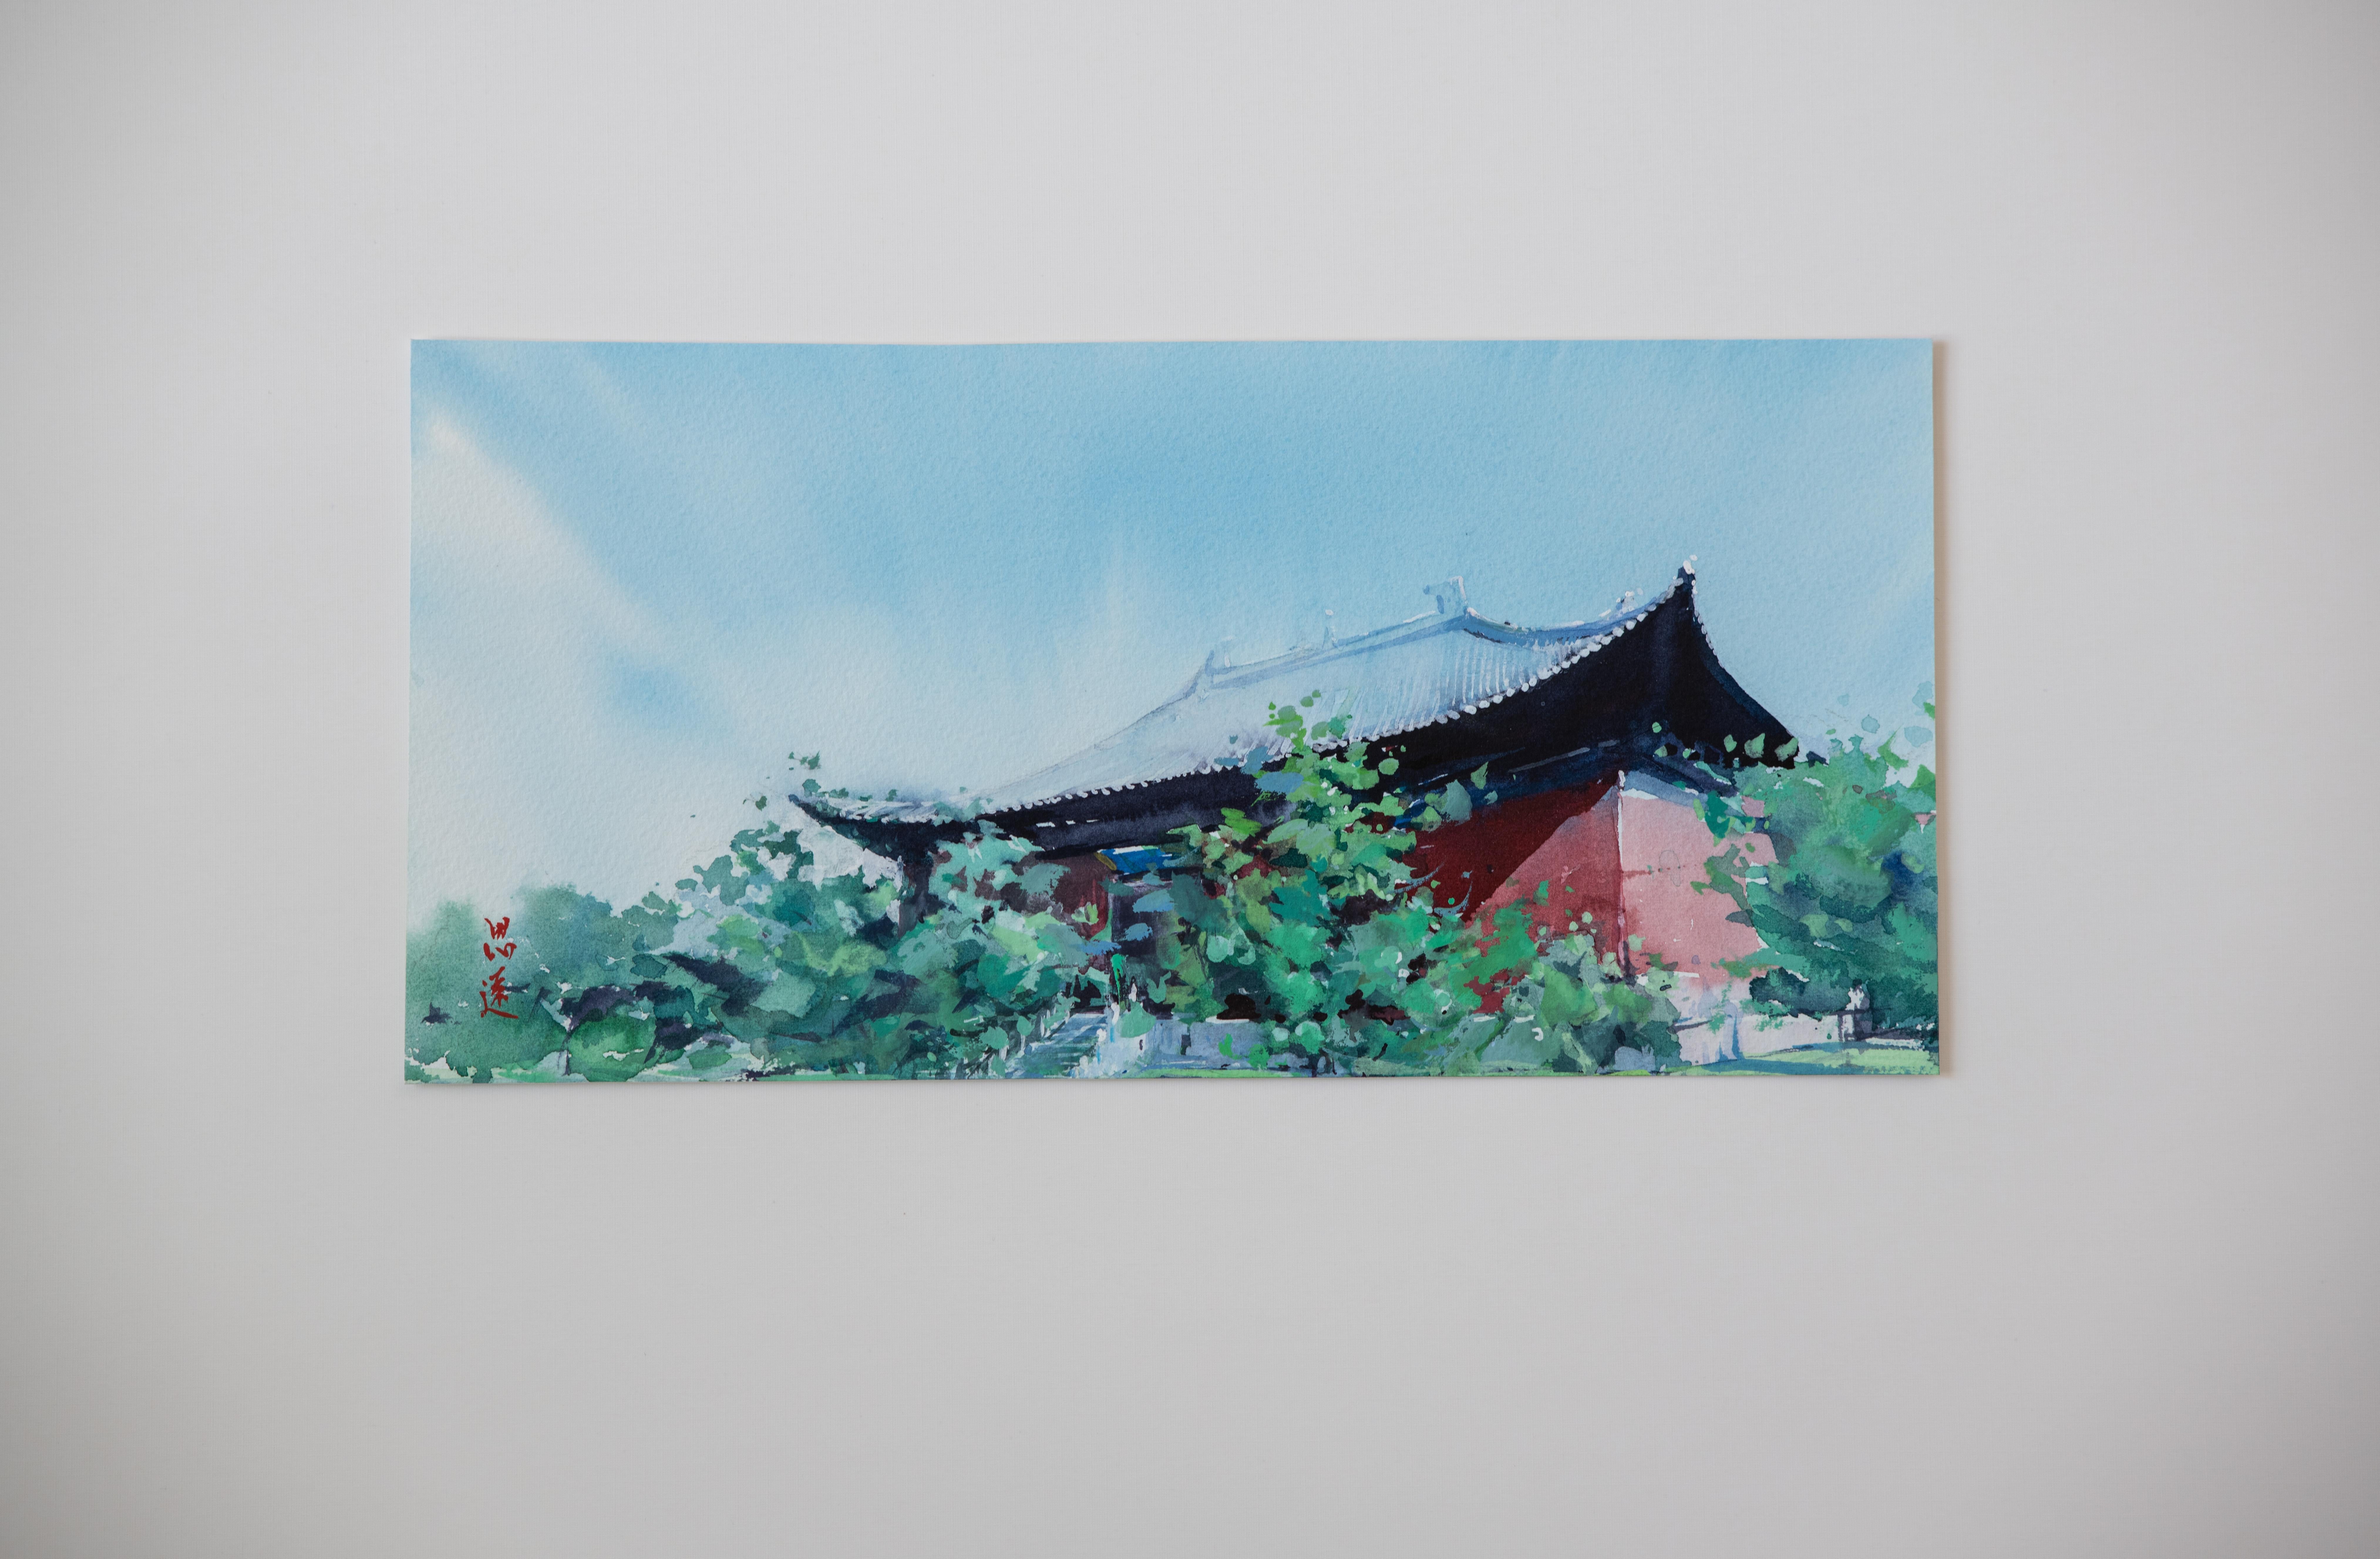 <p>Kommentare des Künstlers<br>Der Künstler Siyuan Ma stellt den Shanhua-Tempel dar, der sich in der antiken Stadt Datong in  Die Provinz Shanxi ist ein wichtiges kulturelles Relikt, das auf staatlicher Ebene geschützt ist. 